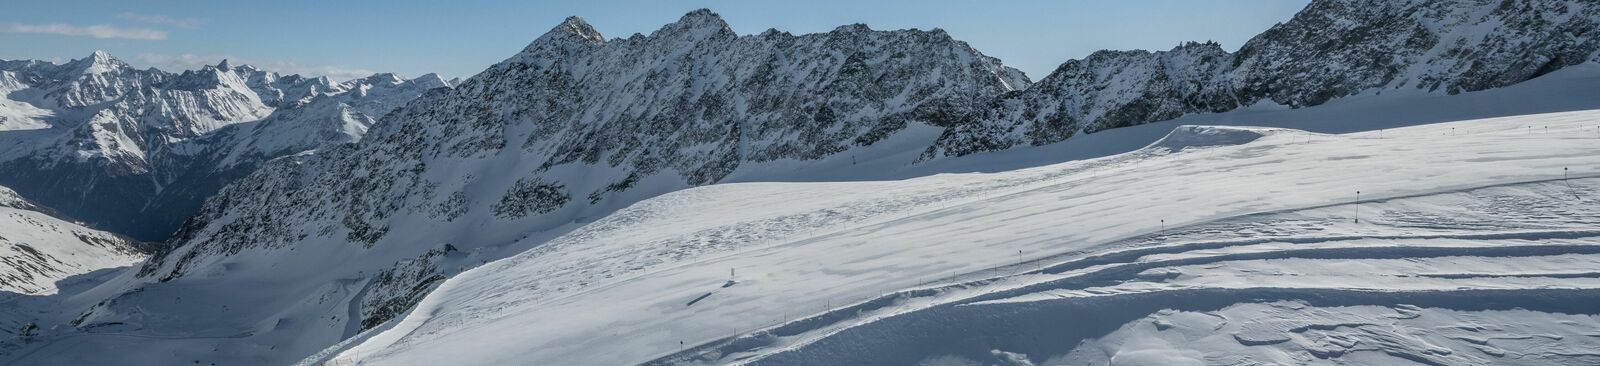 Skigebiet Sölden in Tirol